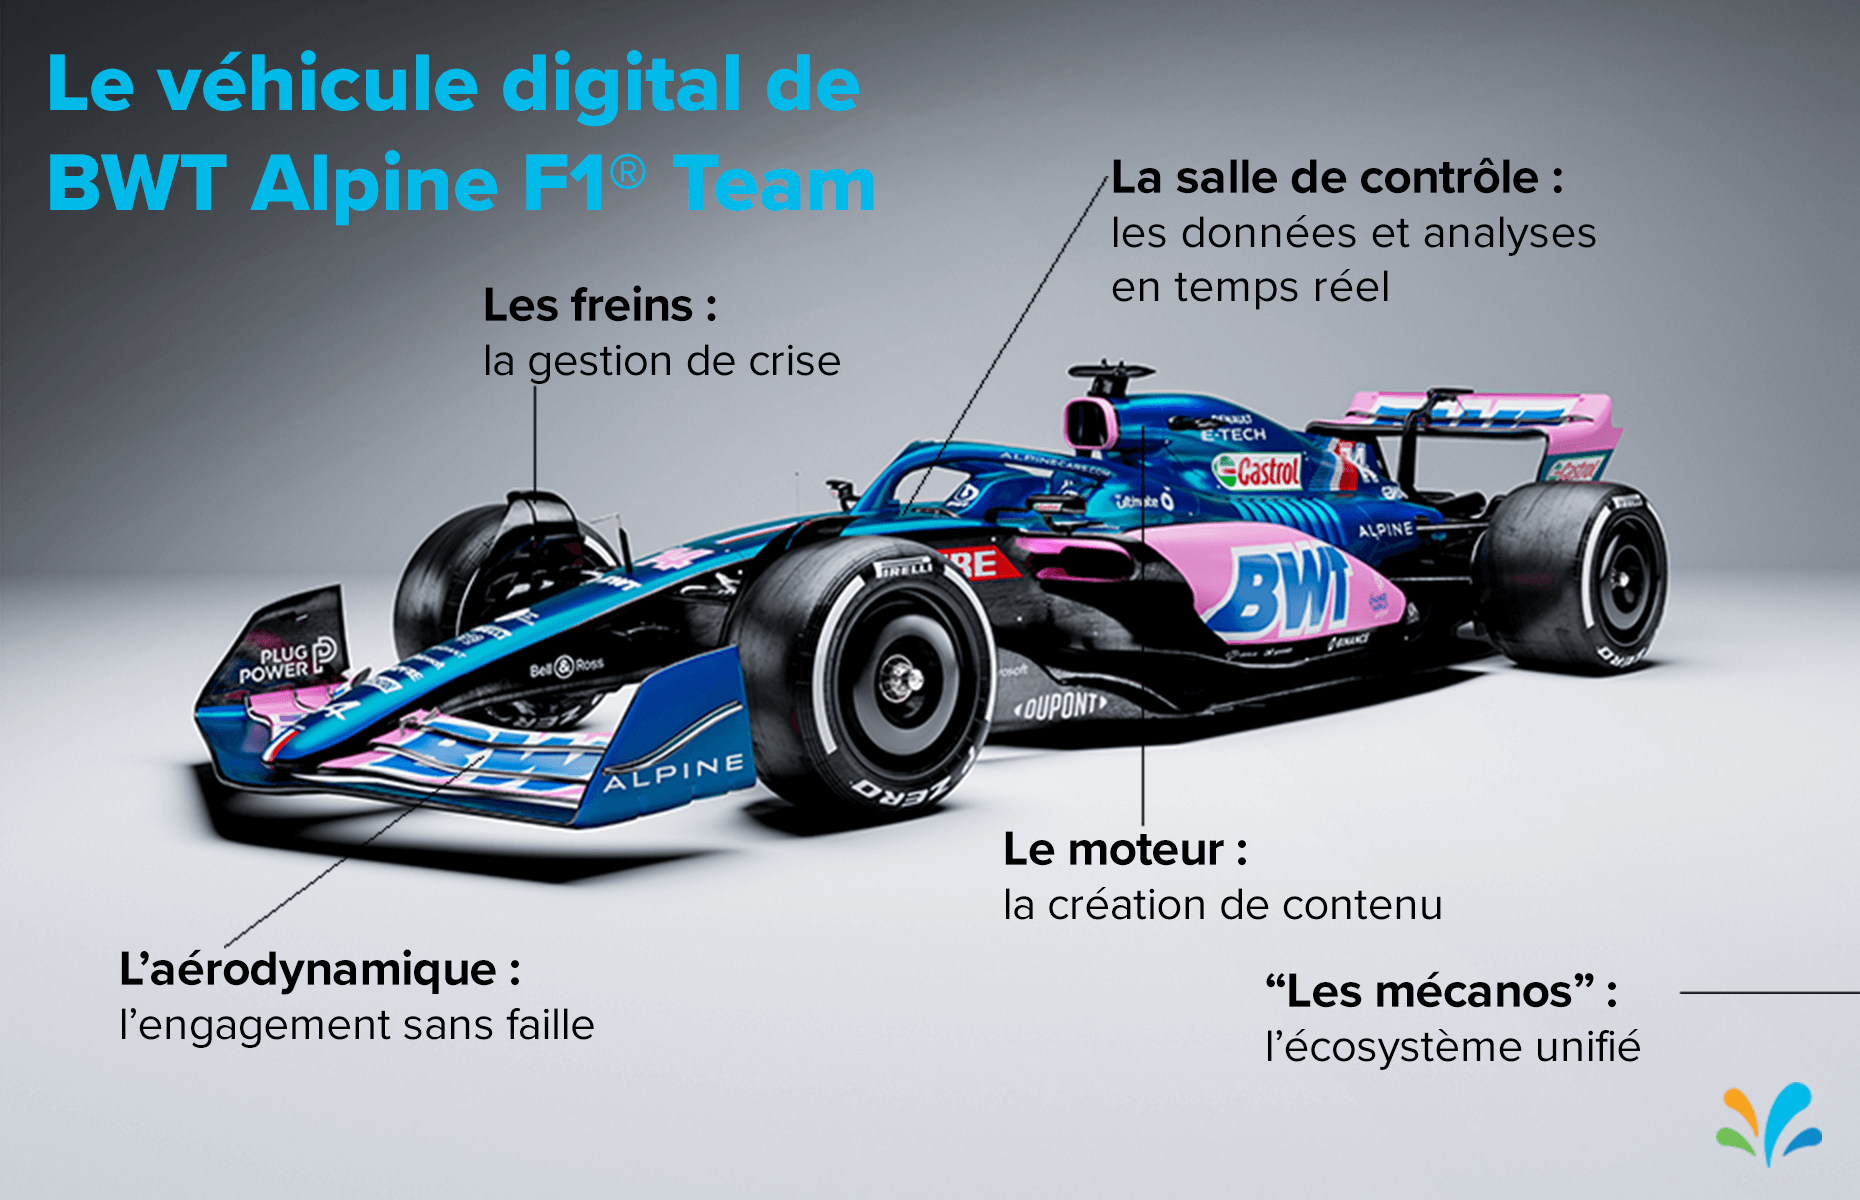 Le véhicule digital deBWT Alpine F1® Team